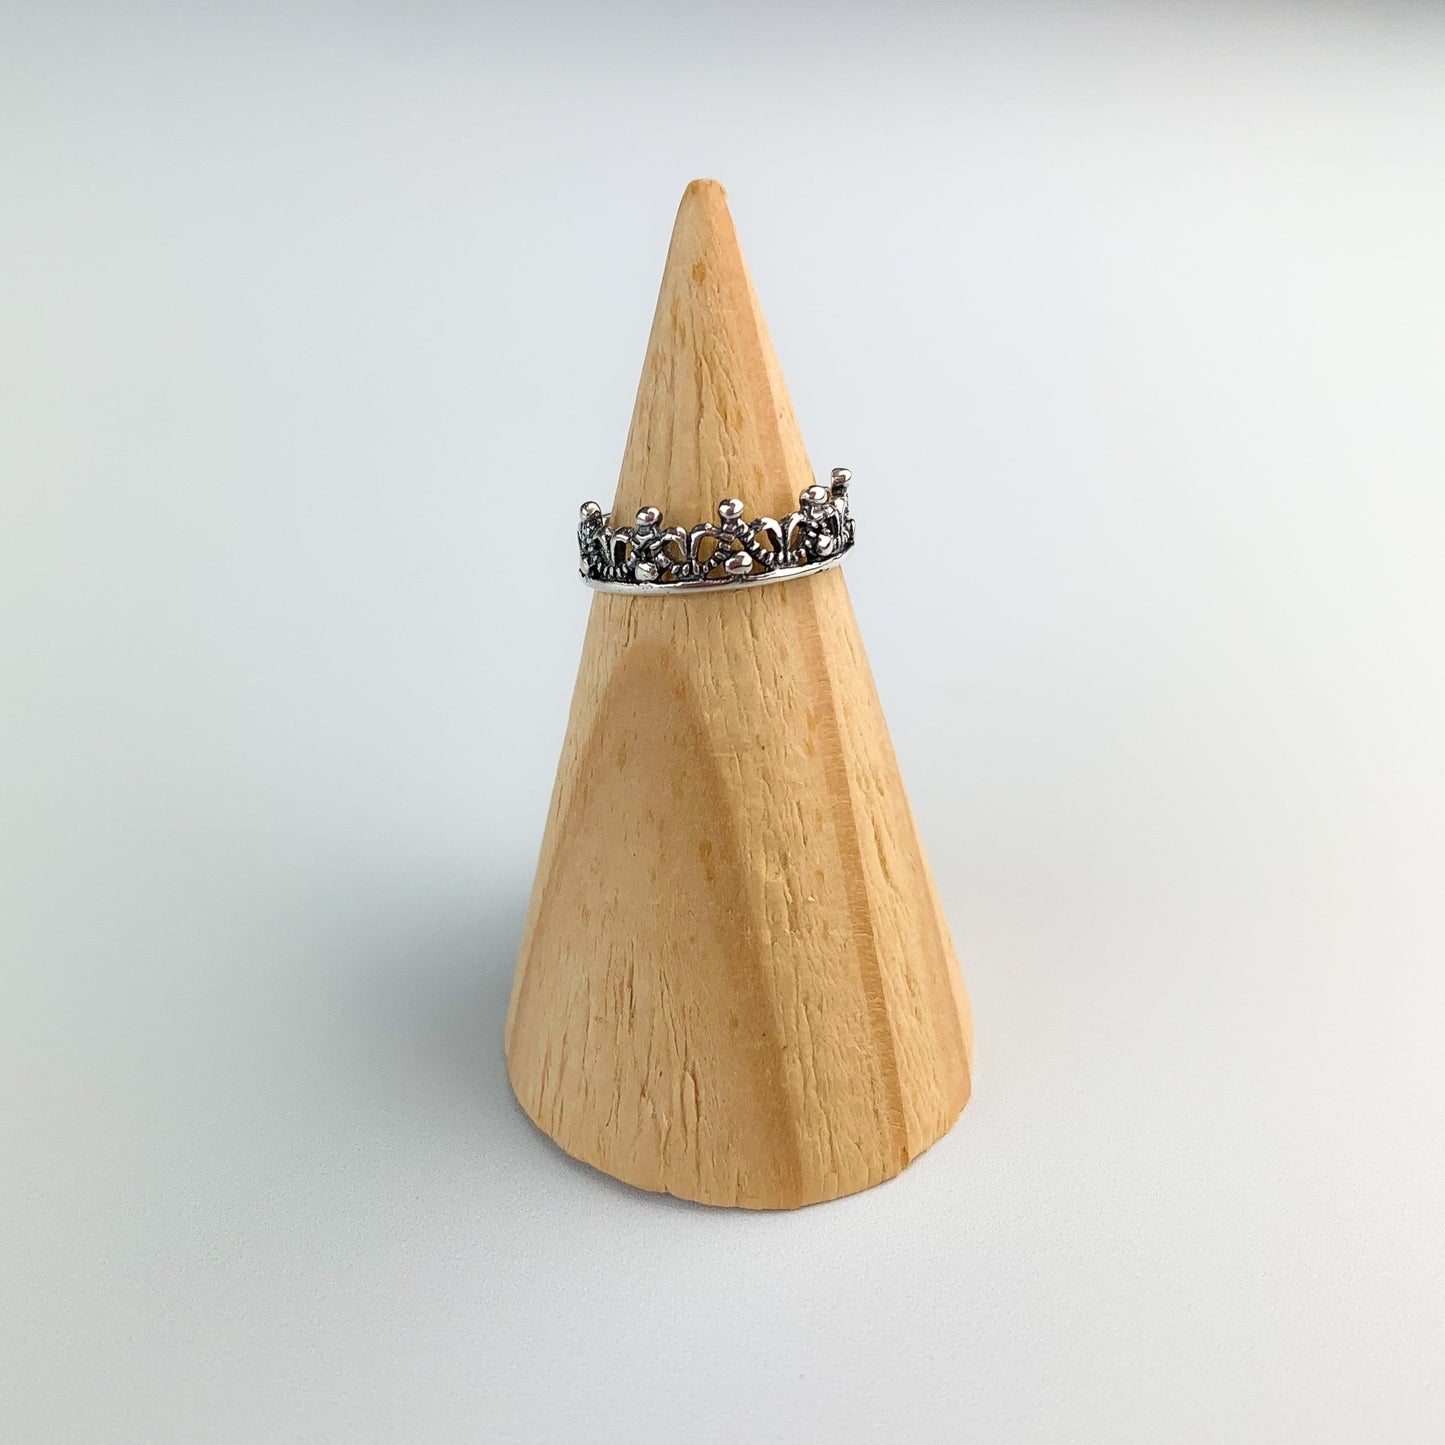 Crown Design Adjustable Ring